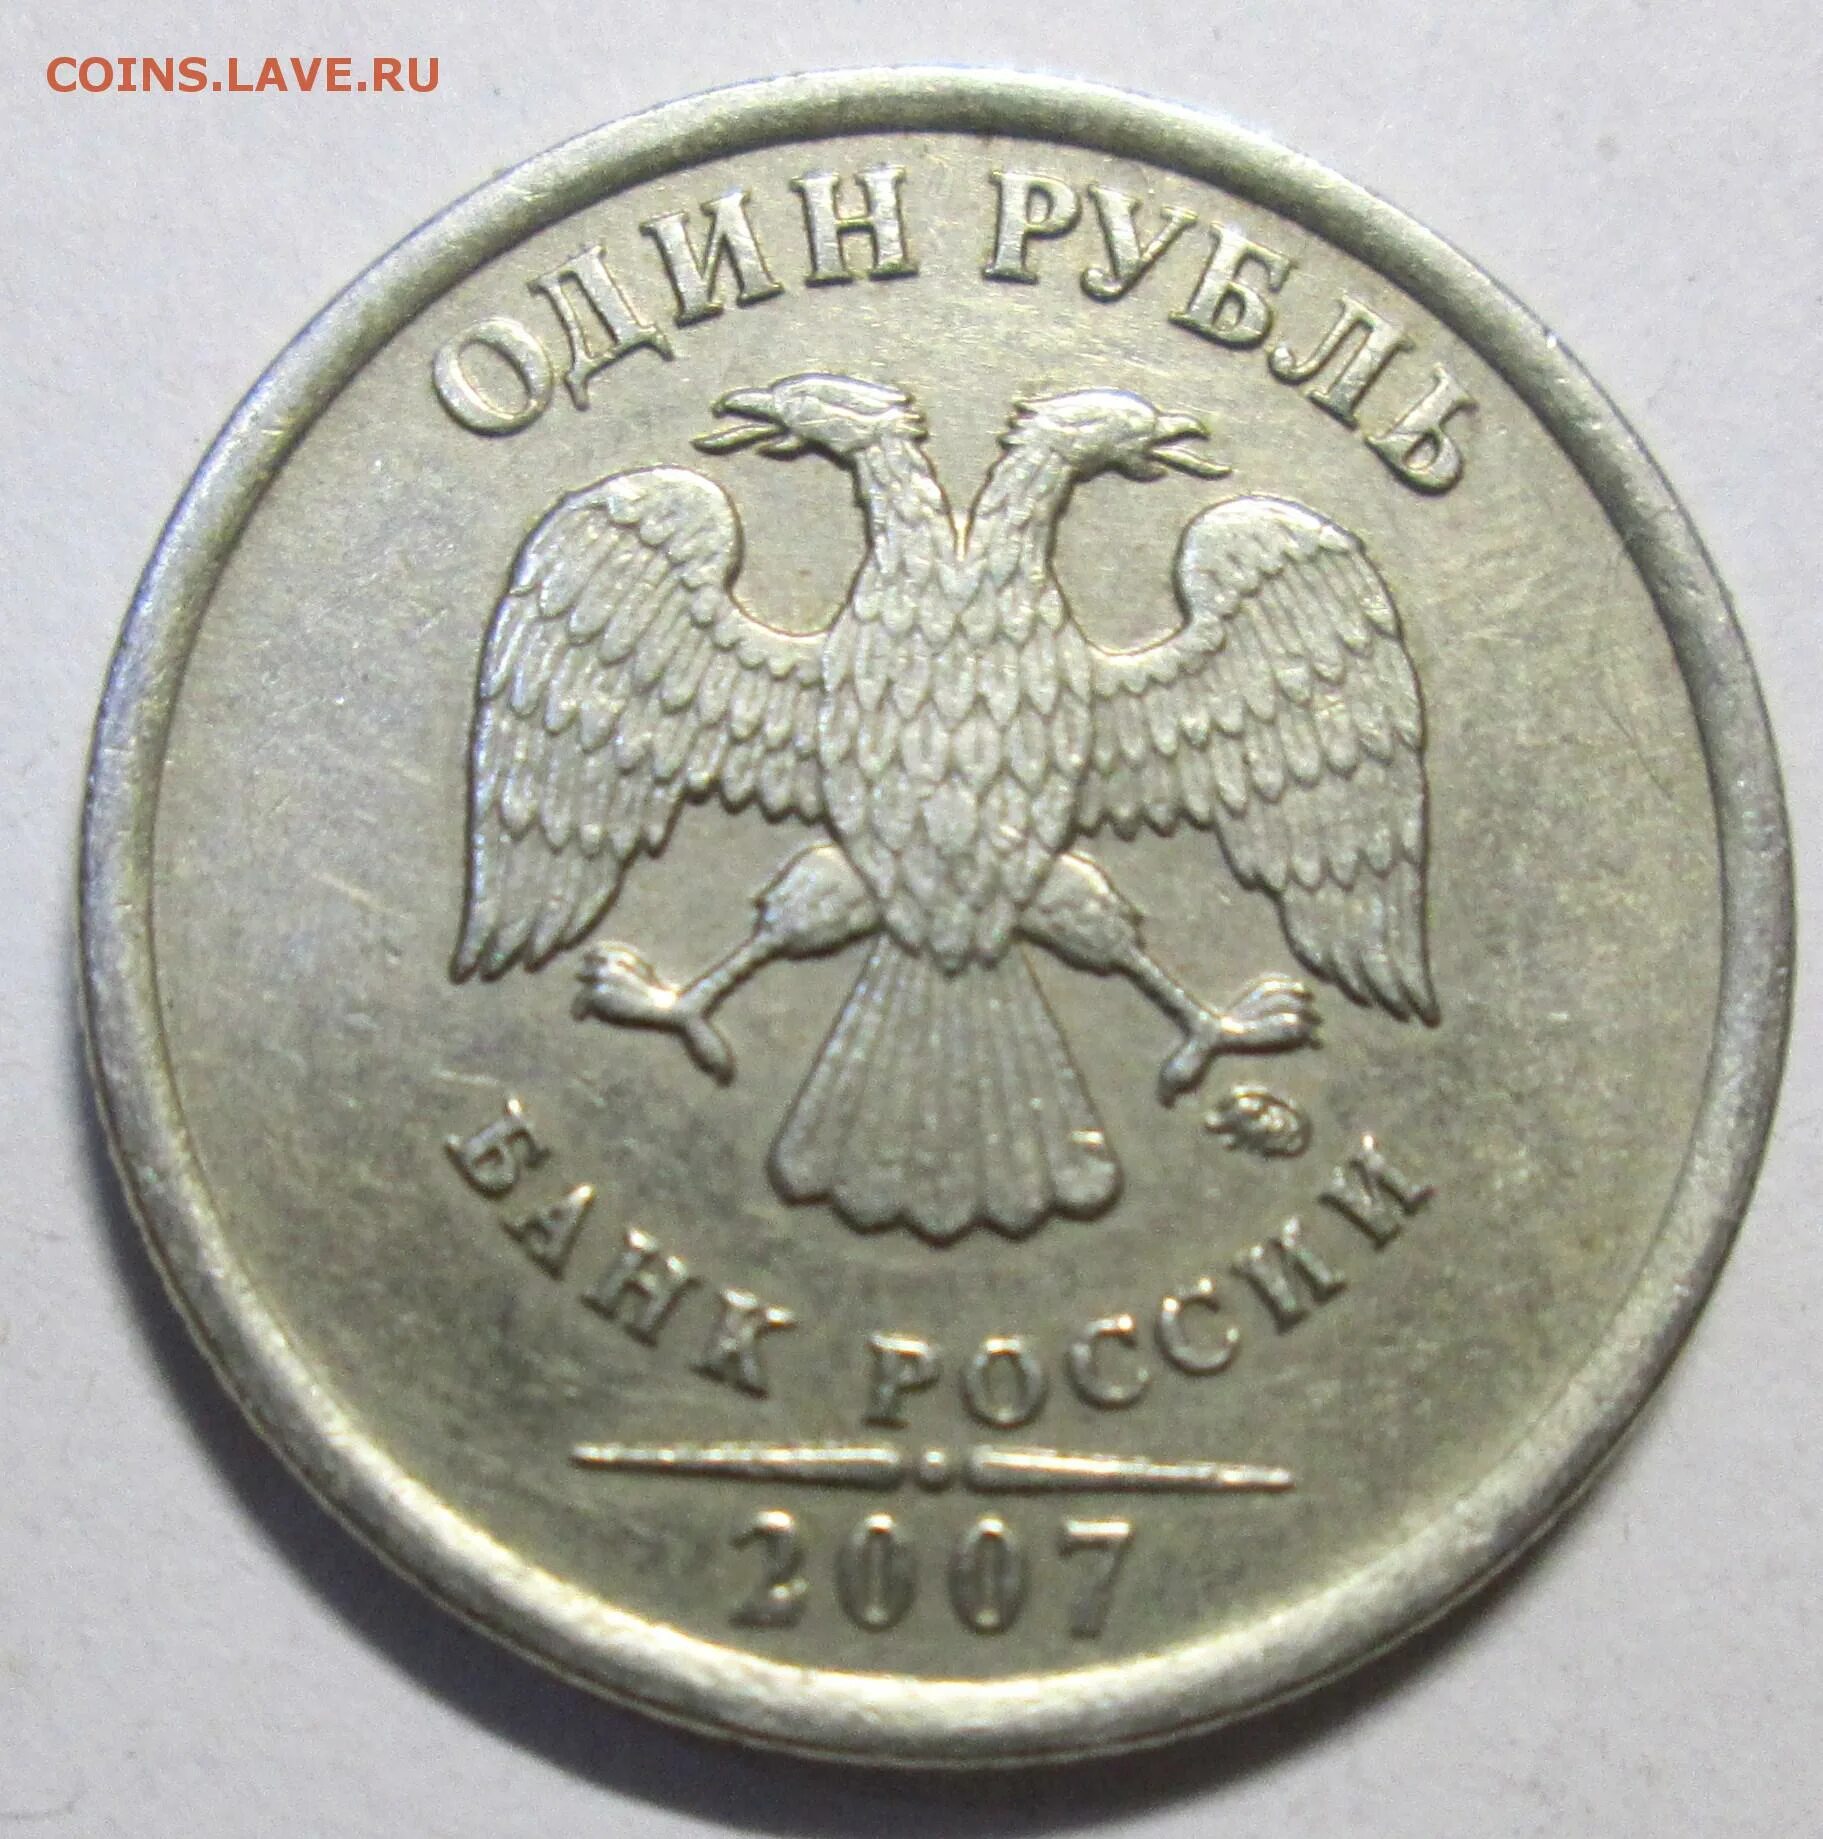 Монета 1 рубль 2007 год